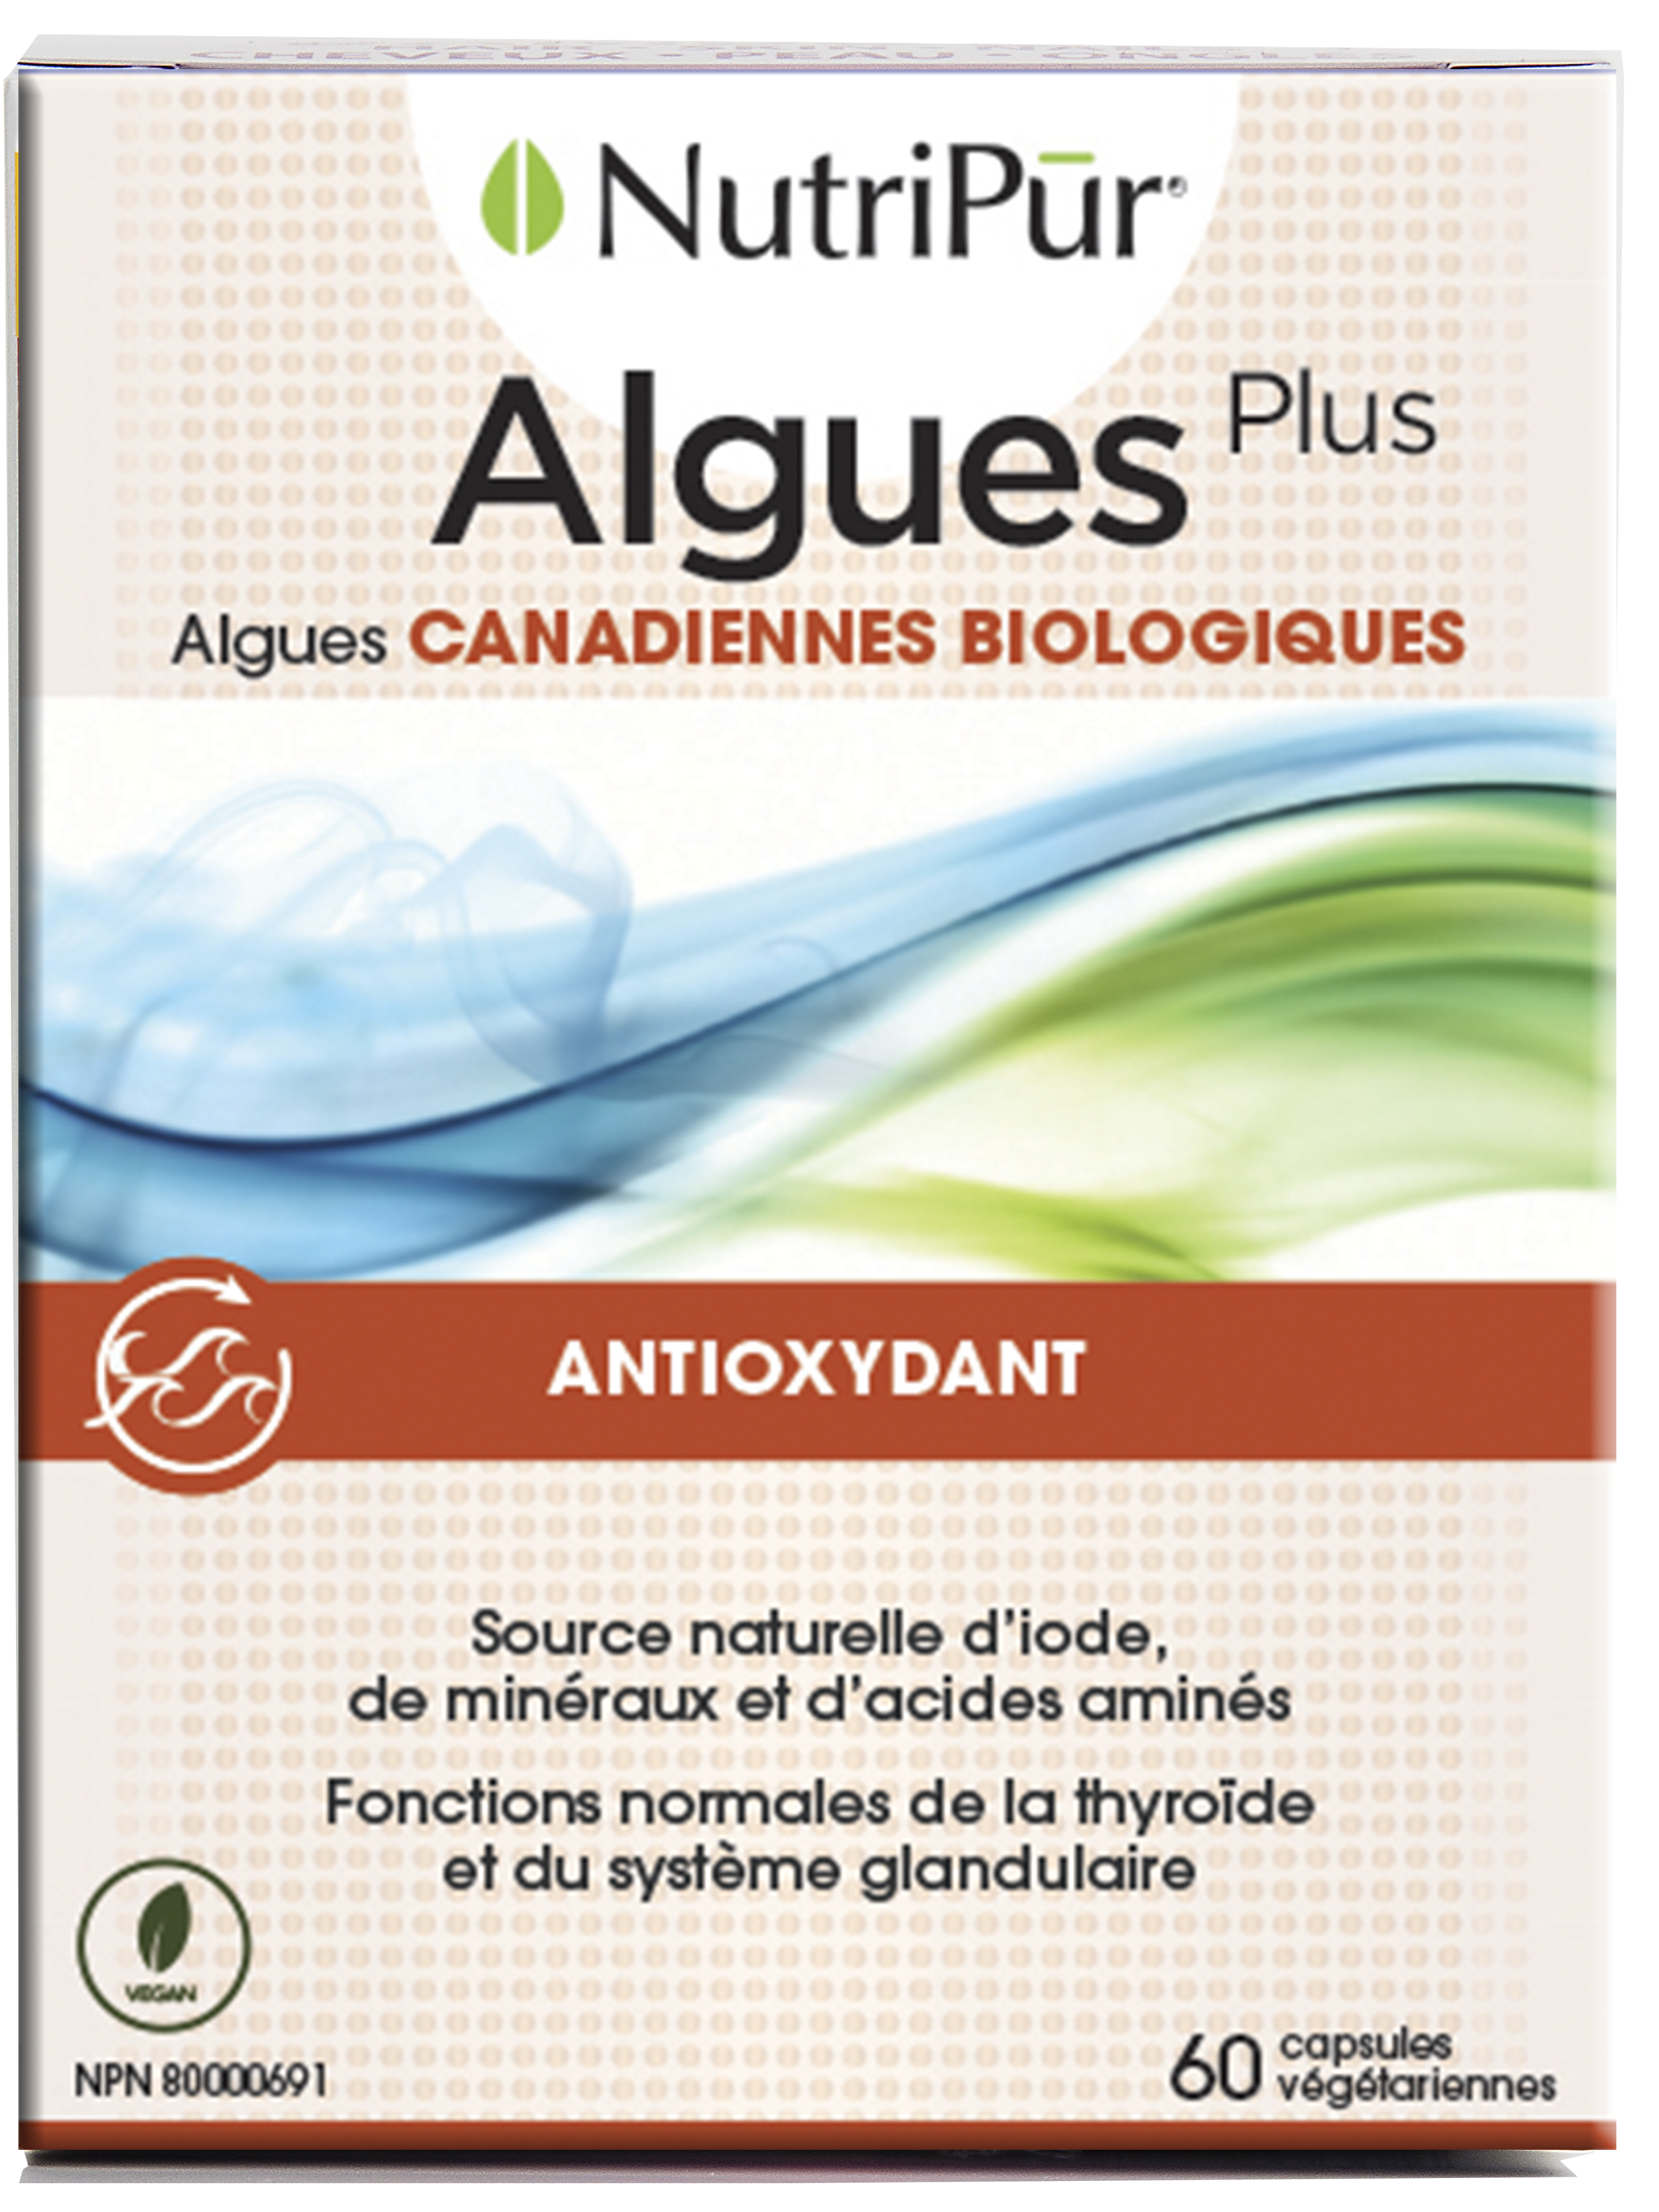 Algues plus - Nutripur - Algues CANADIENNES BIOLOGIQUES - Antioxydant - source d'iodine, mineral, AA - fonctions normales de la thyroide et du systeme glandulaire